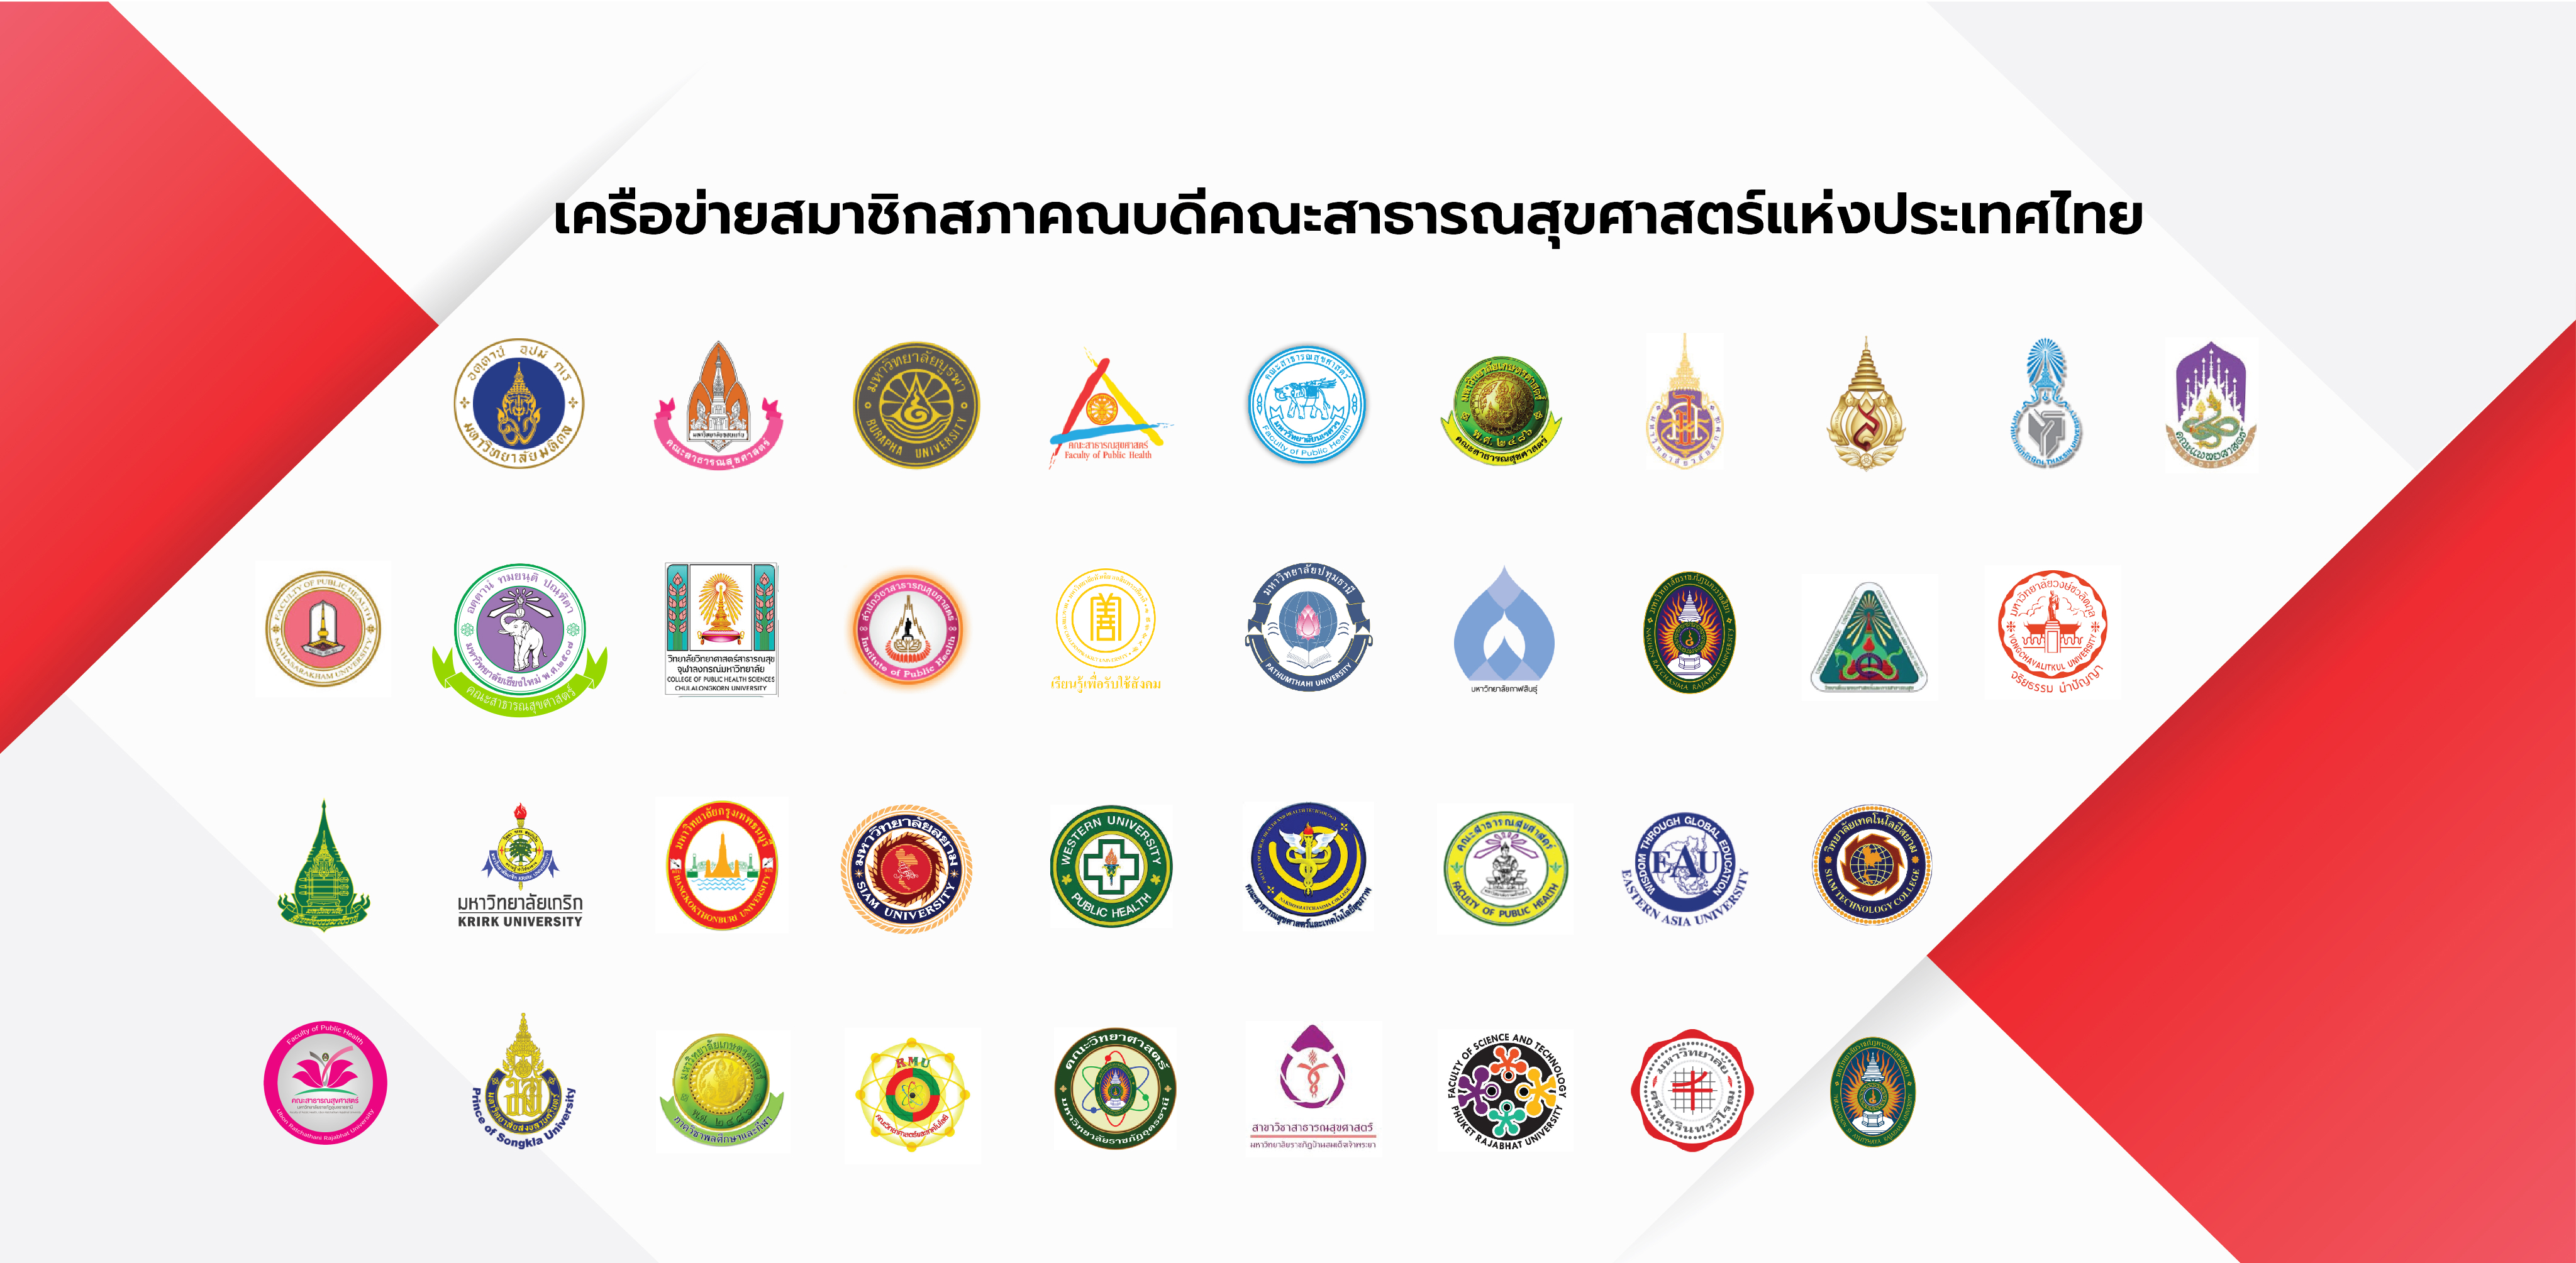 เครือข่ายสมาชิกสภาคณบดีคณะสาธารณสุขศาสตร์แห่งประเทศไทย